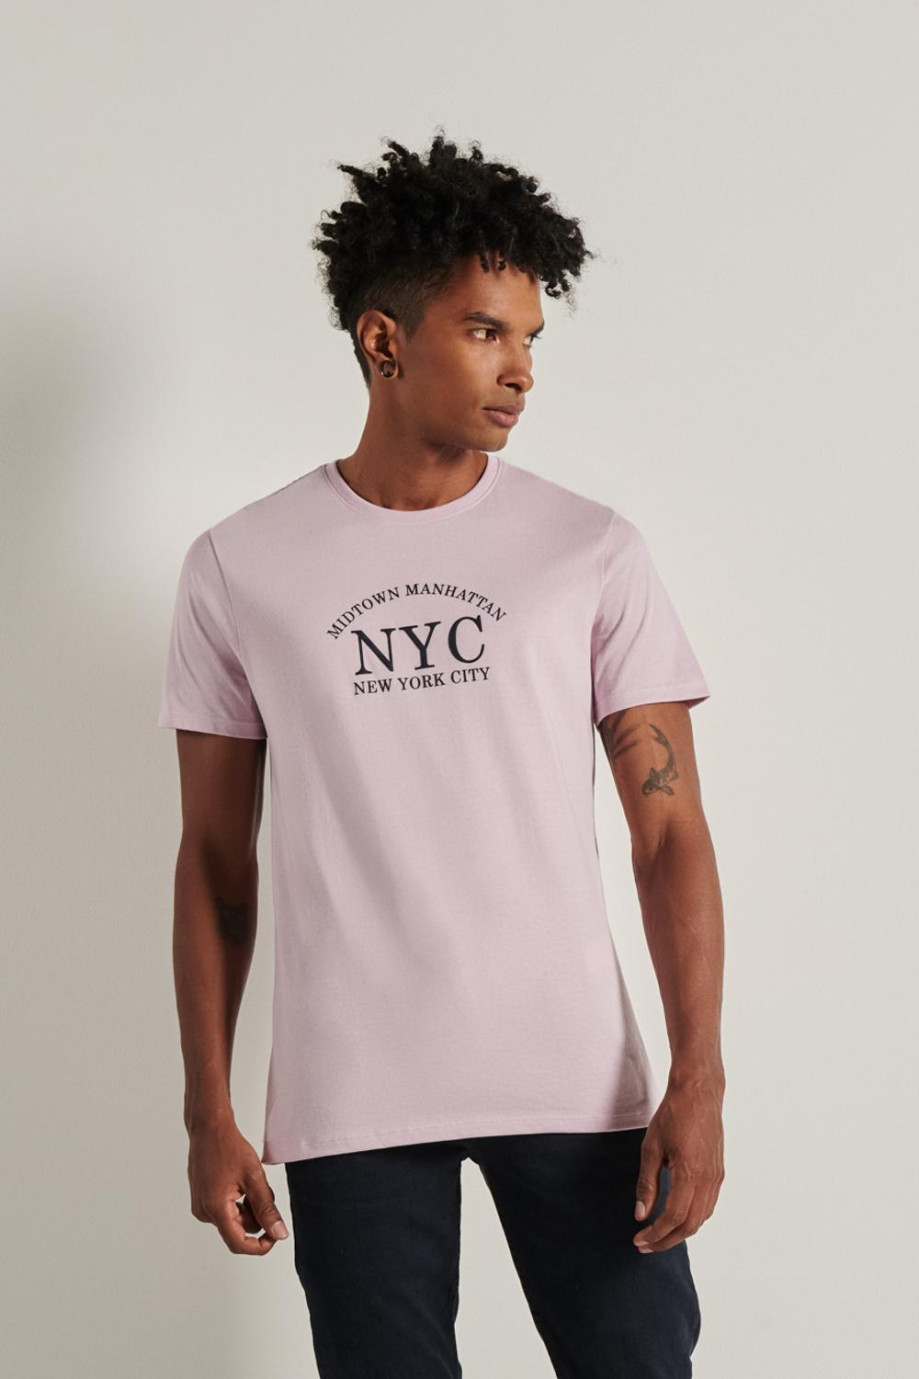 Camiseta unicolor en algodón con manga corta y diseño college de NYC